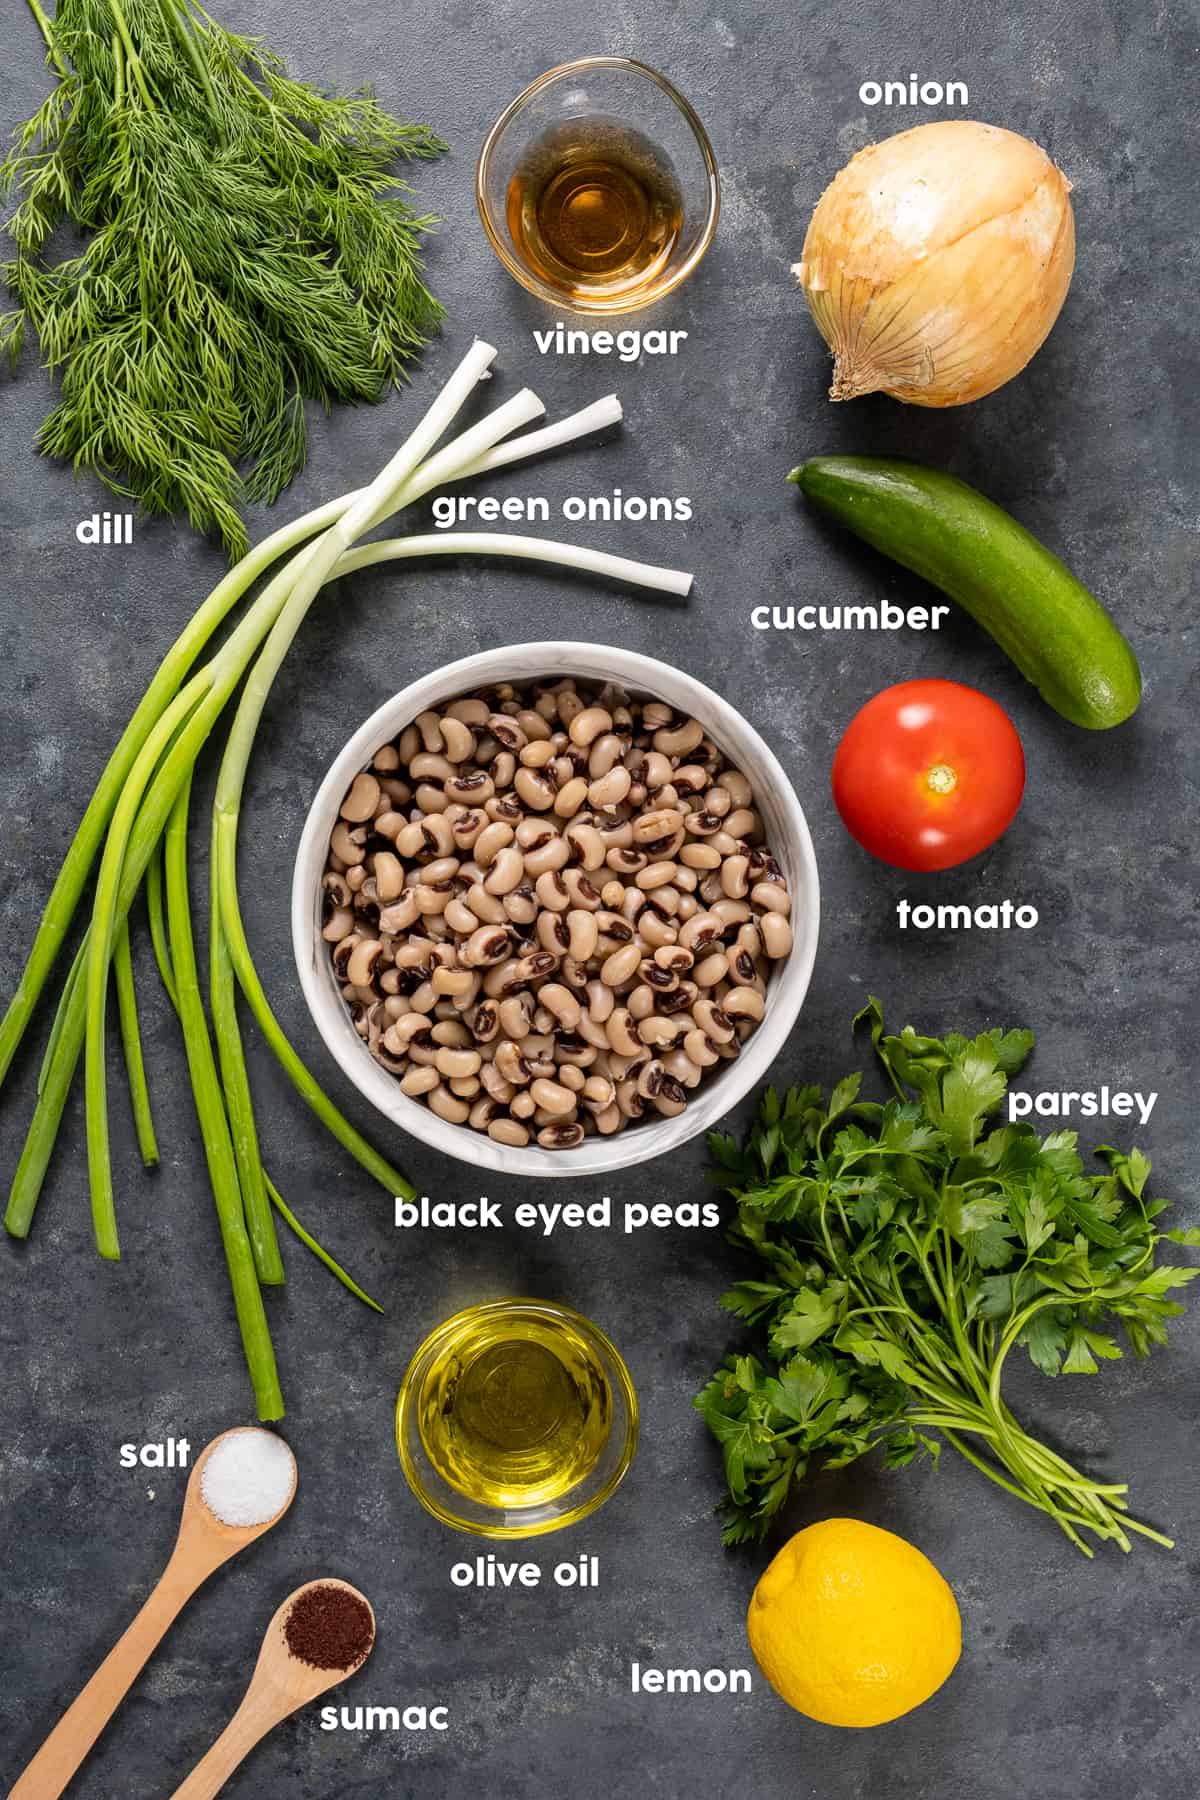 白色的碗里放着黑眼豆豆，中间是绿色的洋葱、新鲜的莳萝和欧芹、柠檬、洋葱、黄瓜、番茄、醋、盐和漆树，背景是黑色的。